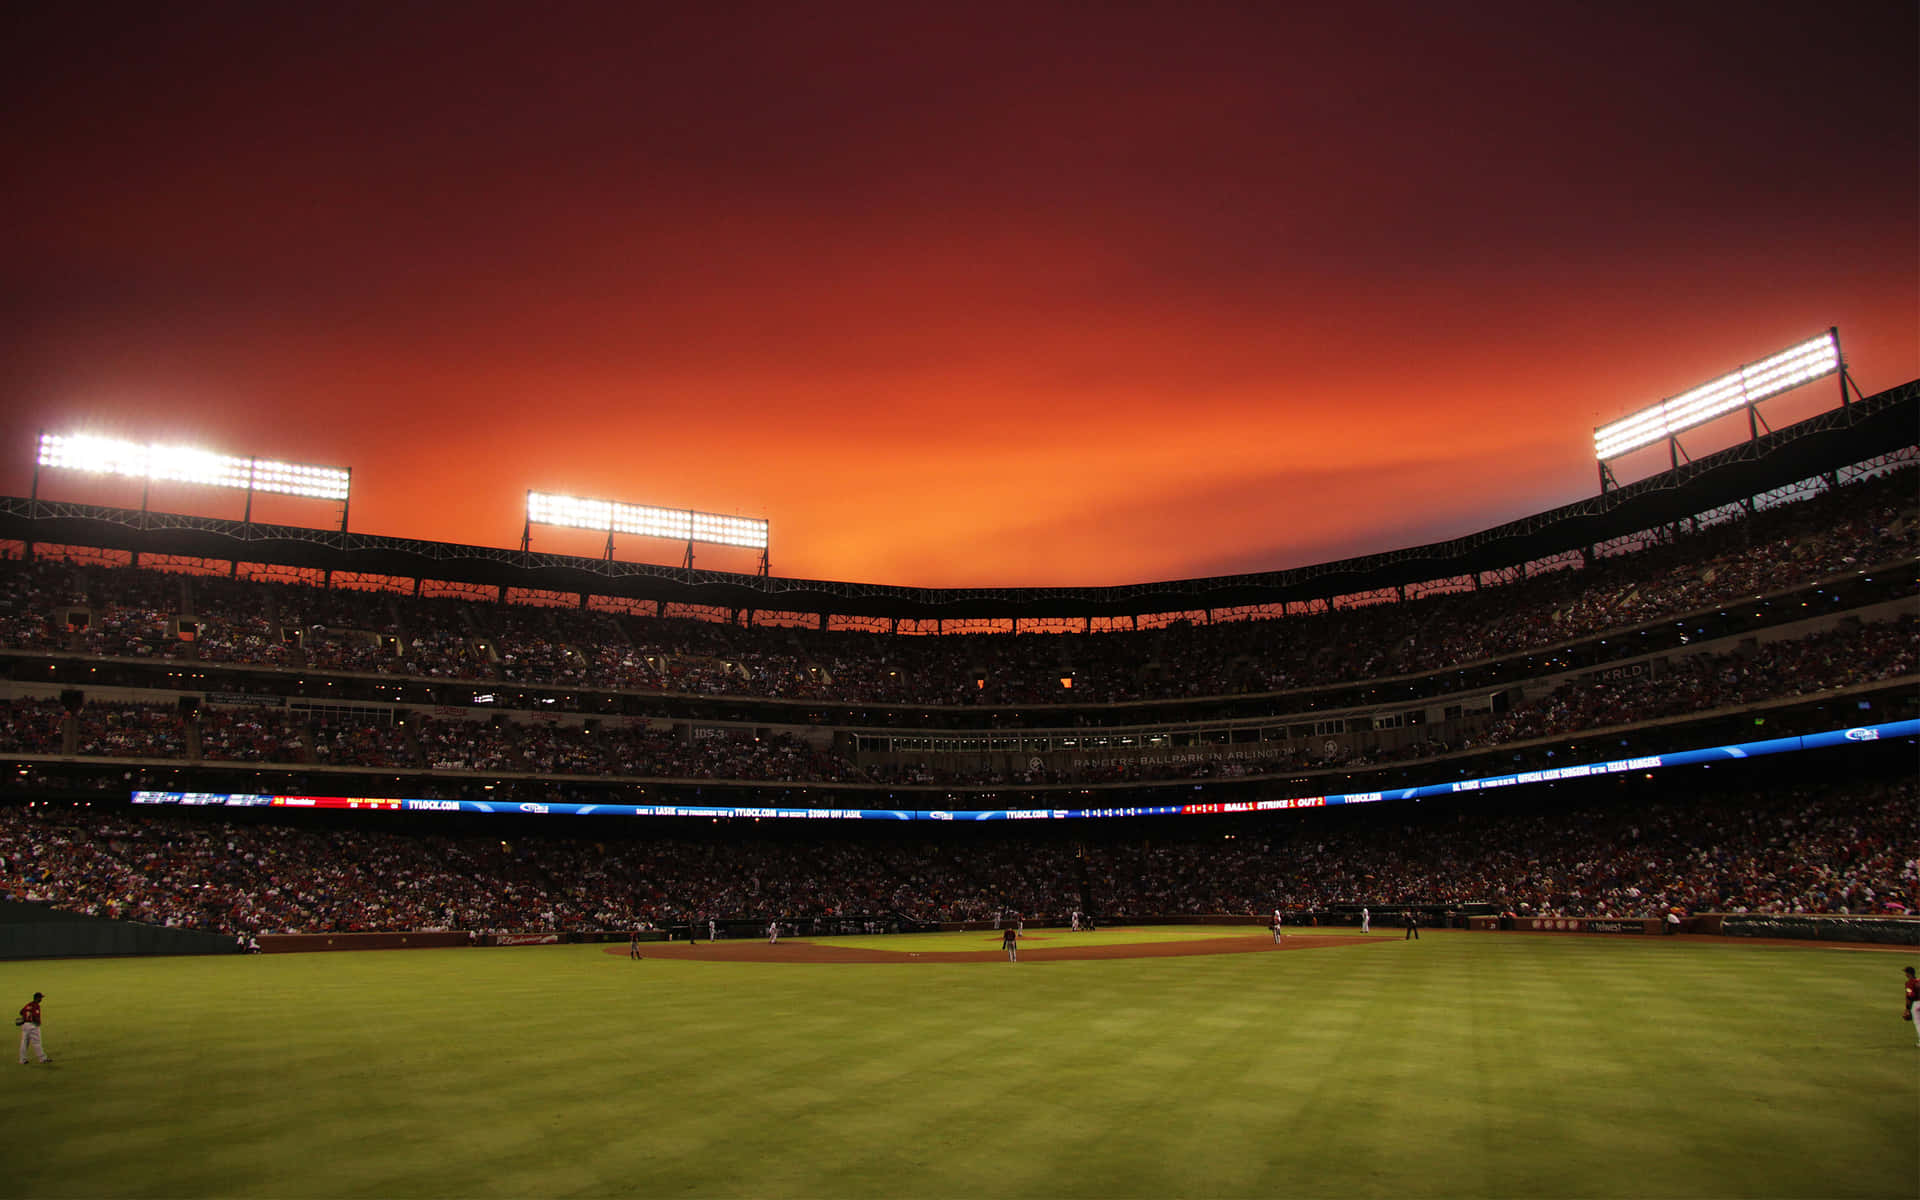 Baseball Field Sunset Ambiance.jpg Wallpaper